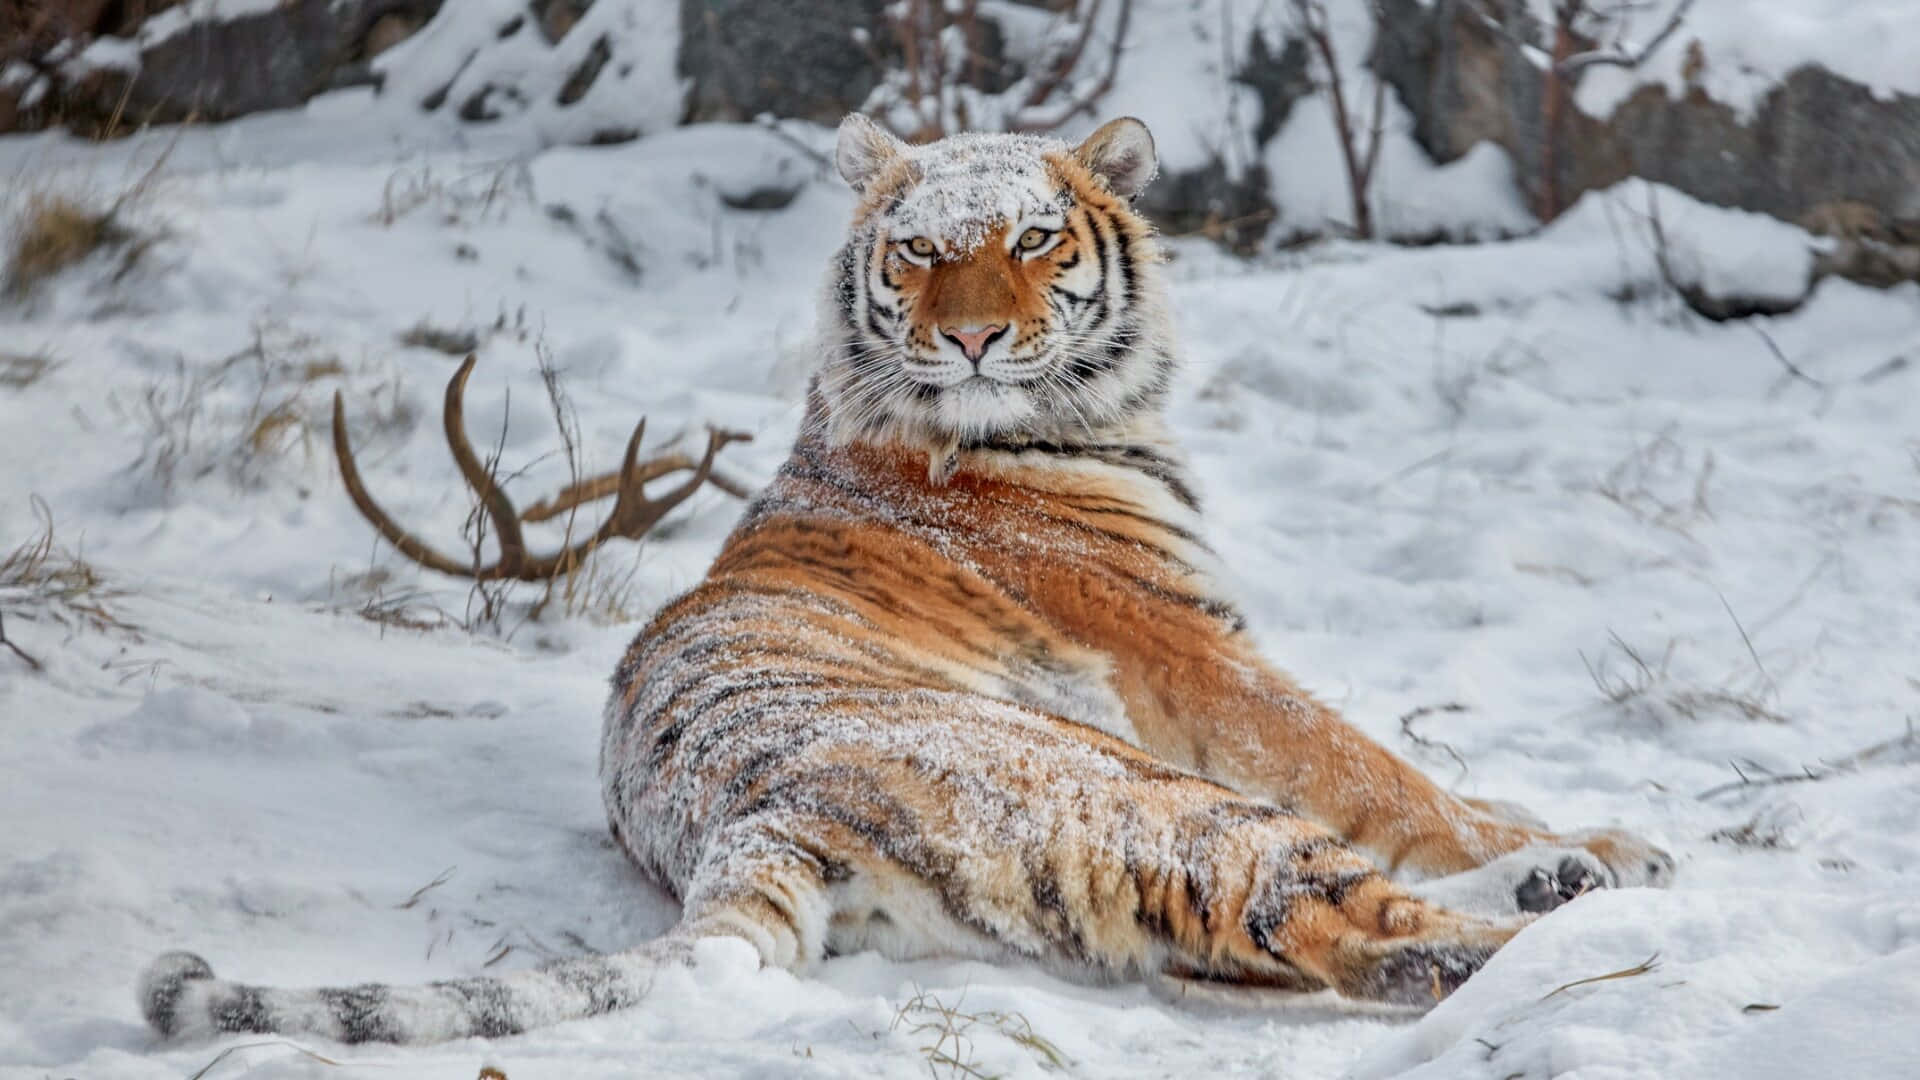 Siberian Tigerin Snow.jpg Wallpaper